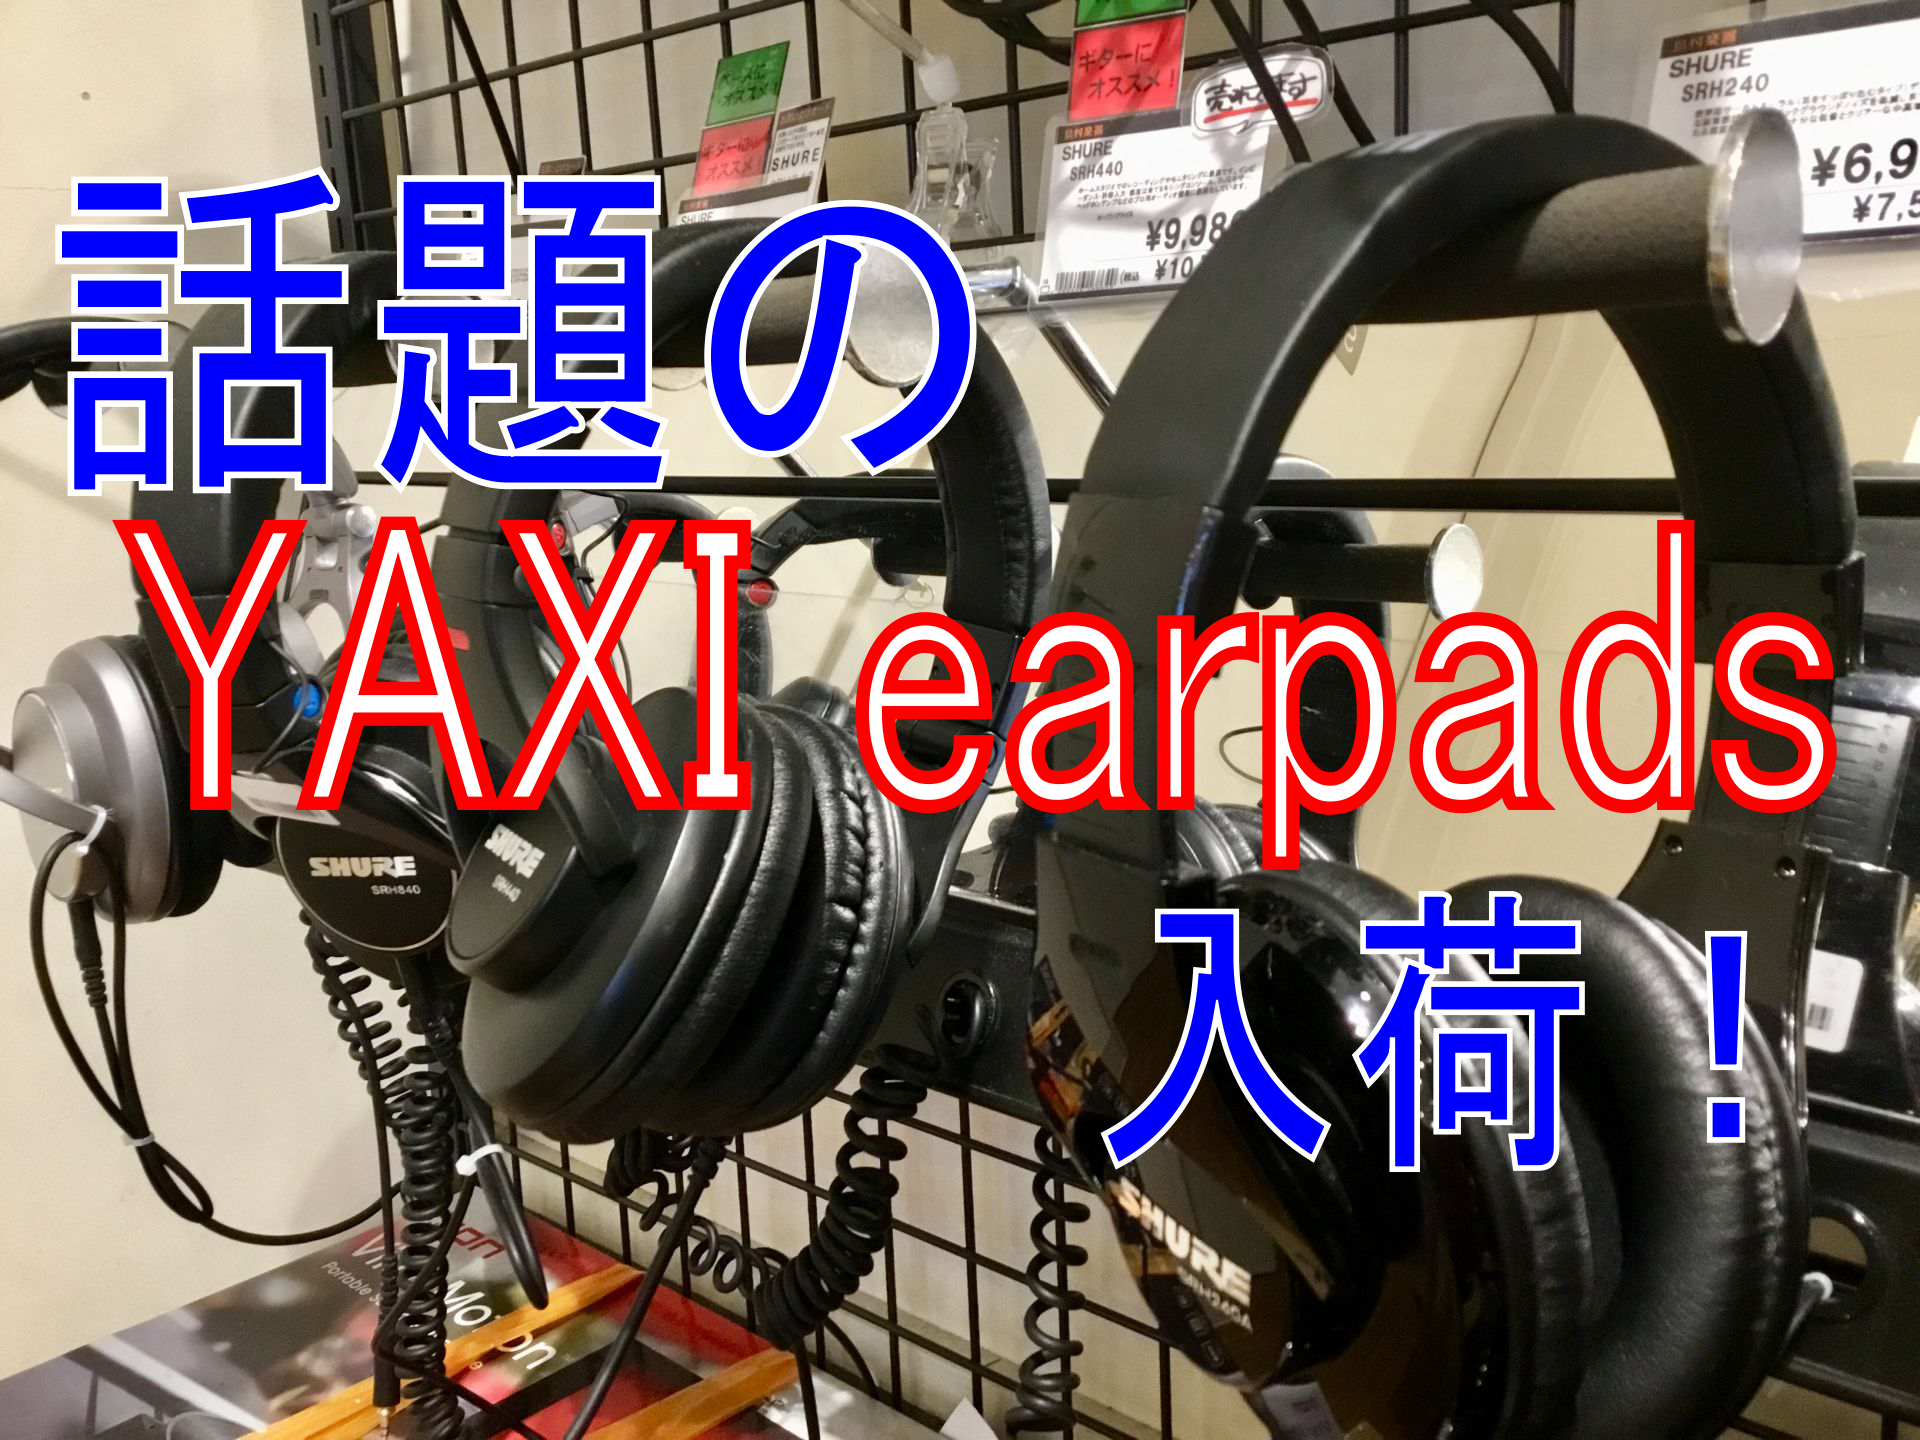 交換用イヤーパッド “YAXI earpads” 入荷！在庫一覧！